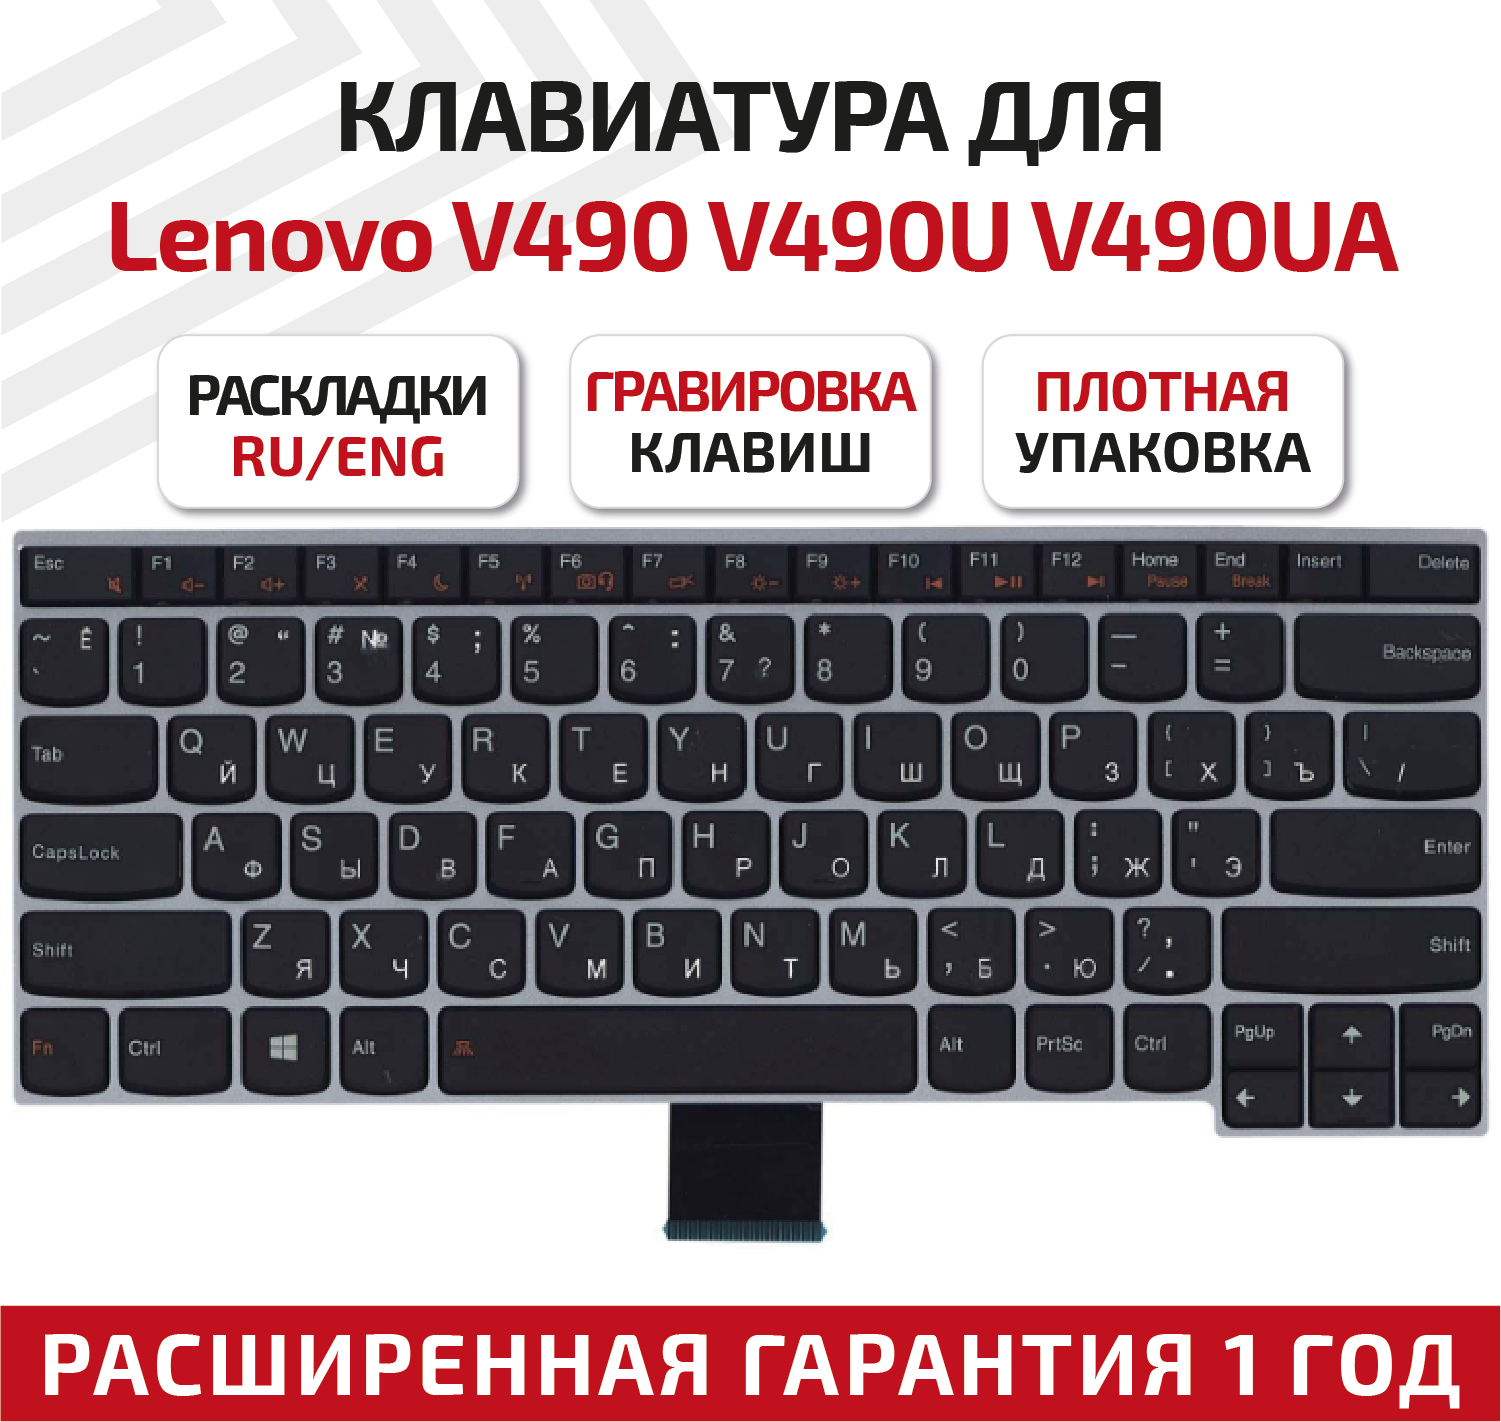 Клавиатура (keyboard) 25210244 для ноутбука Lenovo V490, V490U, V490UA, черная с серебристой рамкой